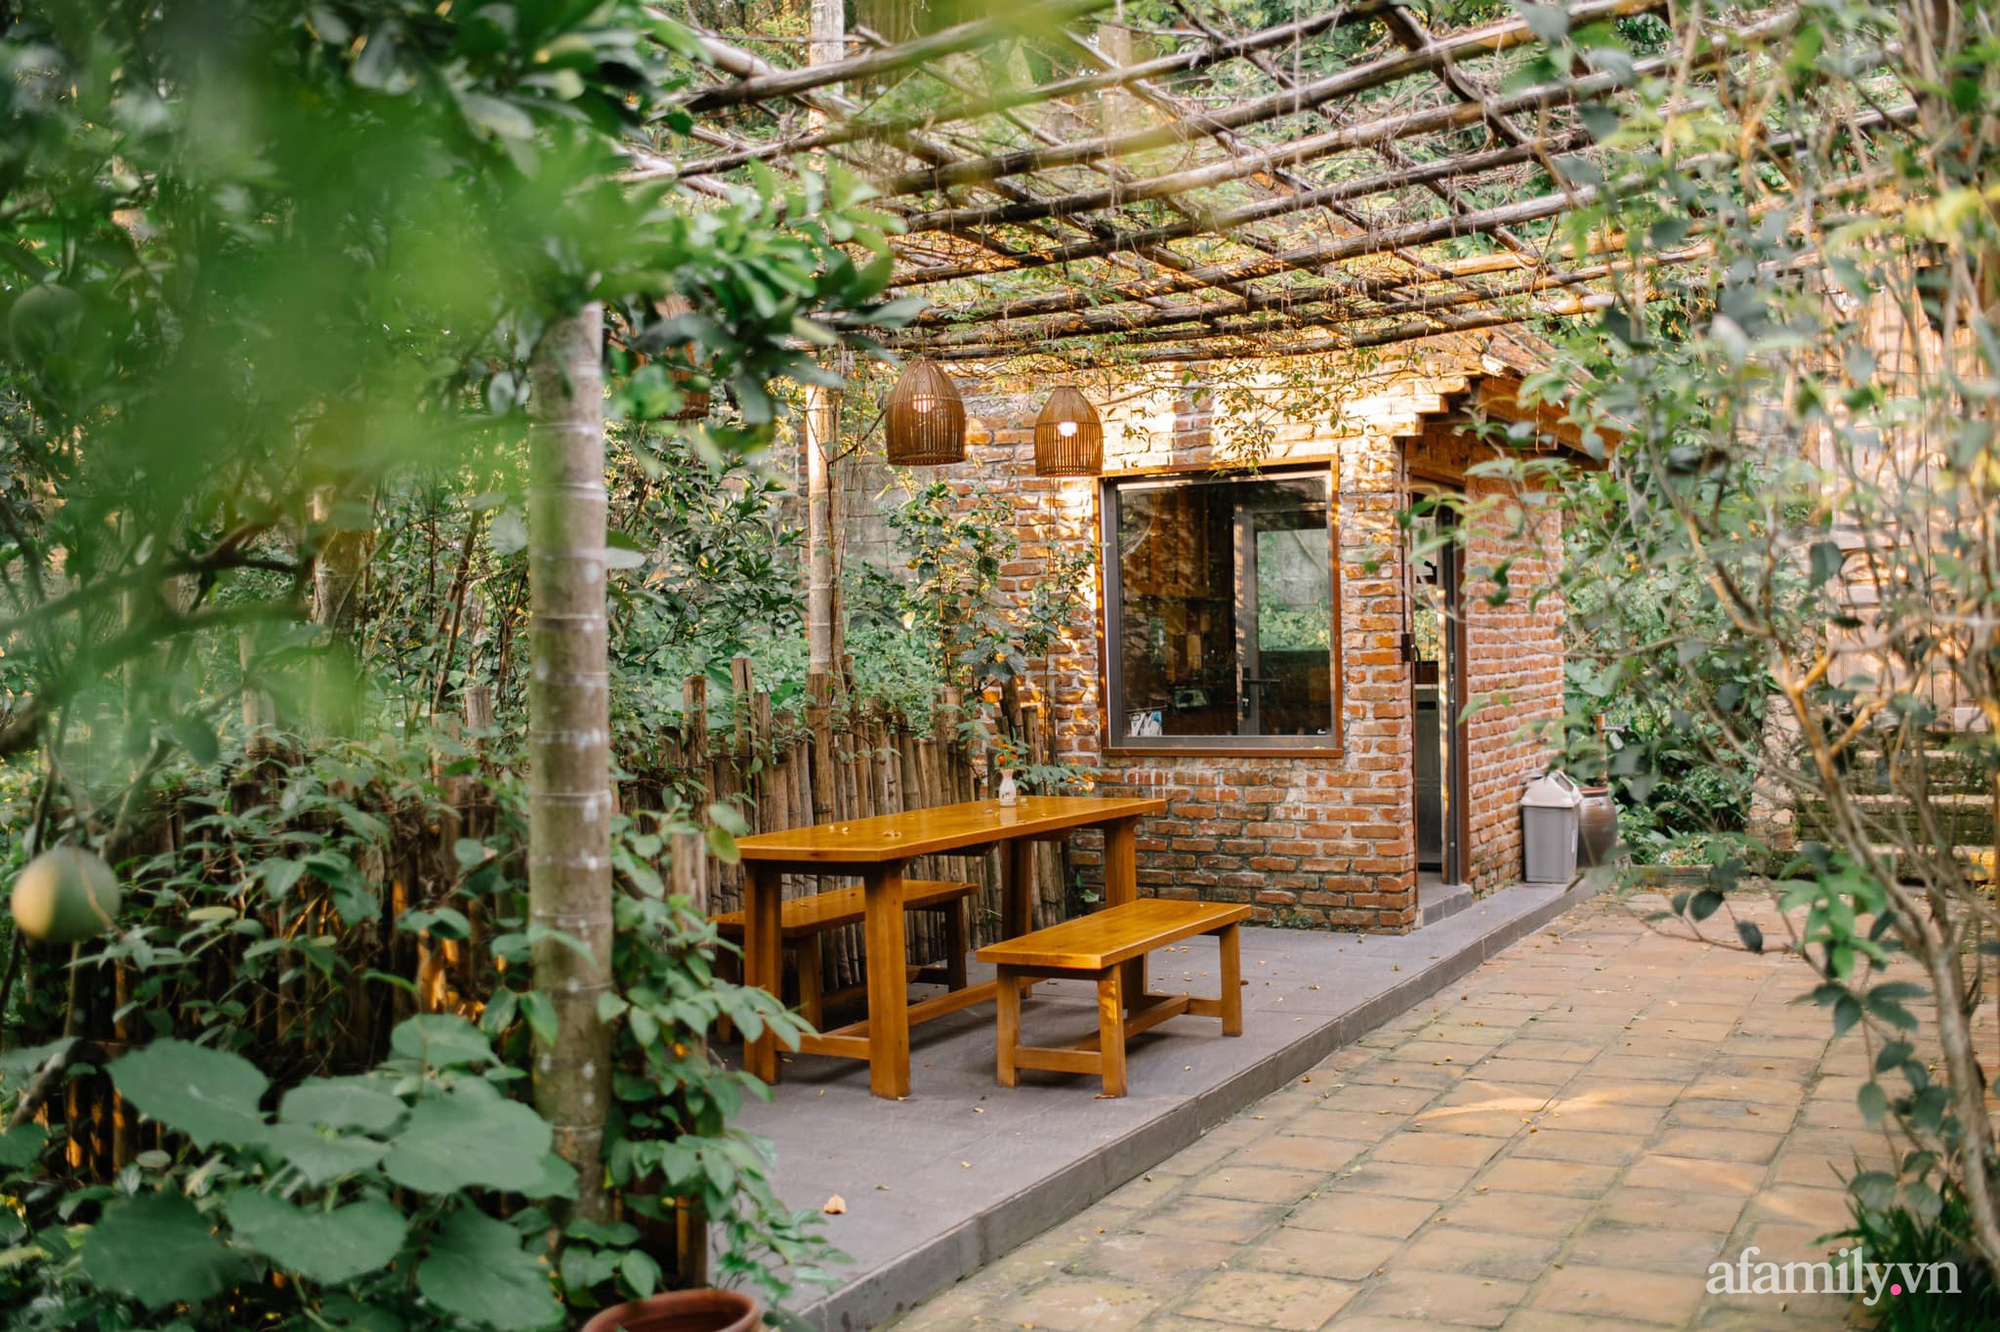 Cuộc sống yên bình trong ngôi nhà nhỏ cùng khu vườn xanh mát bóng cây ở ngoại thành Hà Nội - Ảnh 4.